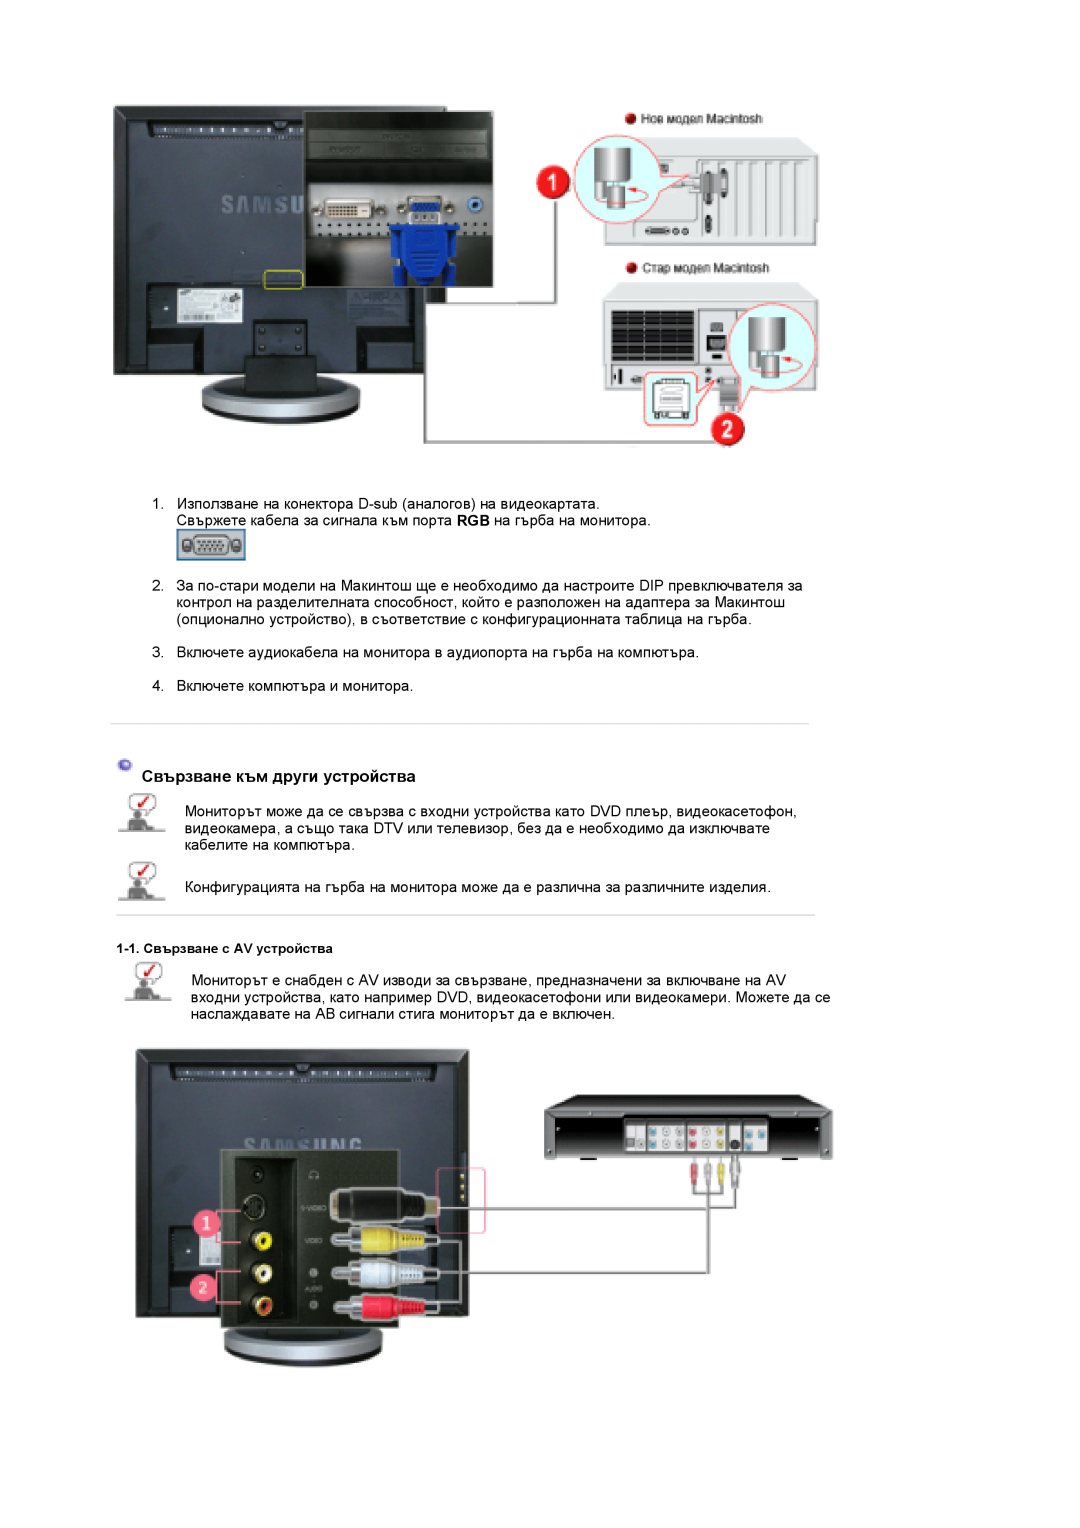 Samsung LS19DOCSS/EDC, LS19DOWSSZ/EDC manual Свързване към други устройства, 1-1. Свързване с AV устройства 